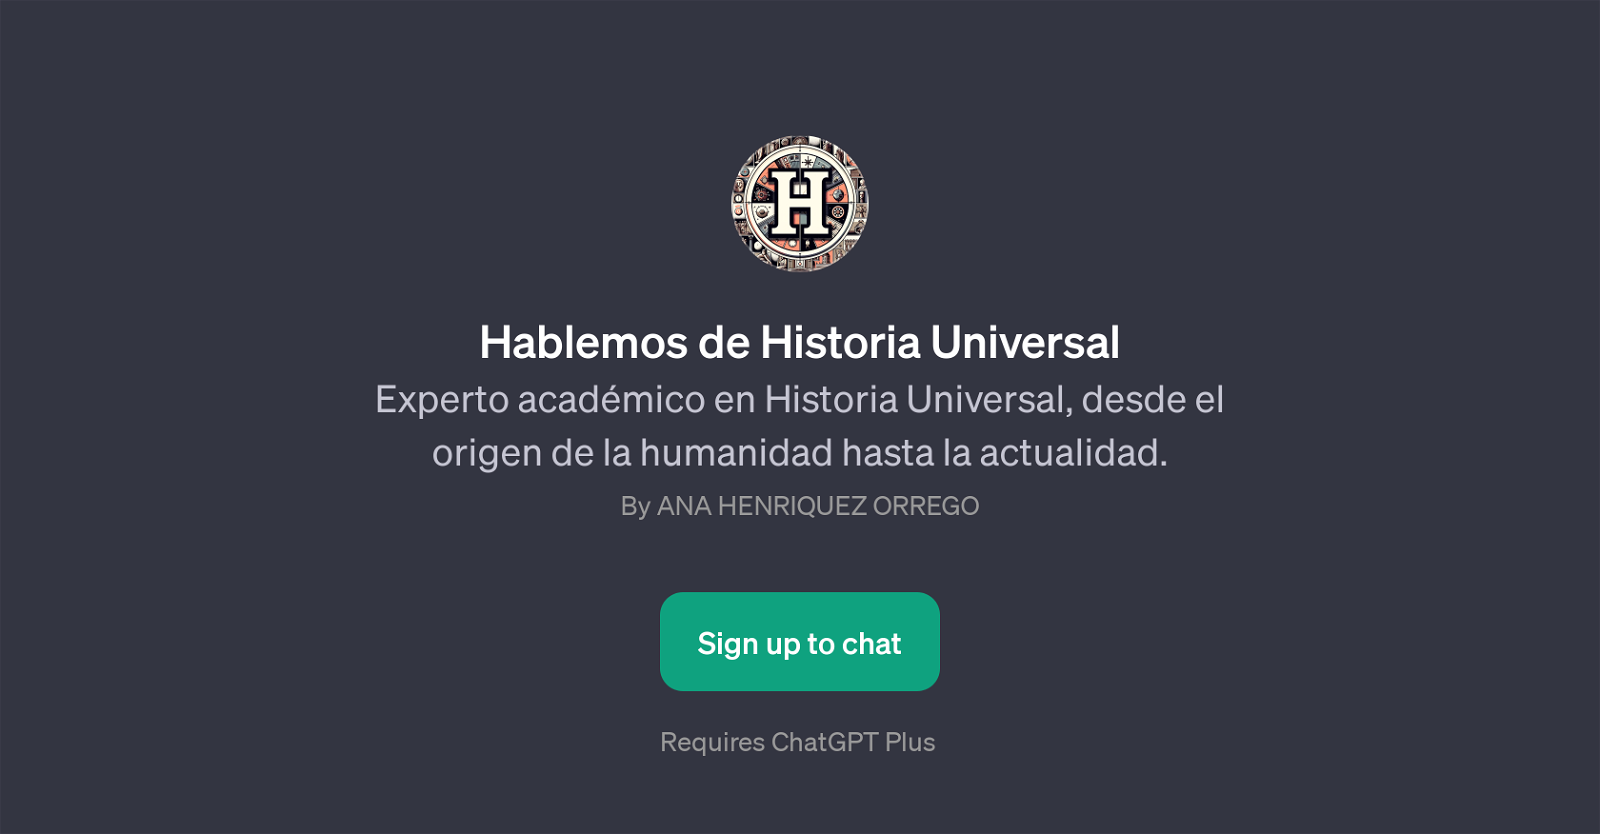 Hablemos de Historia Universal website